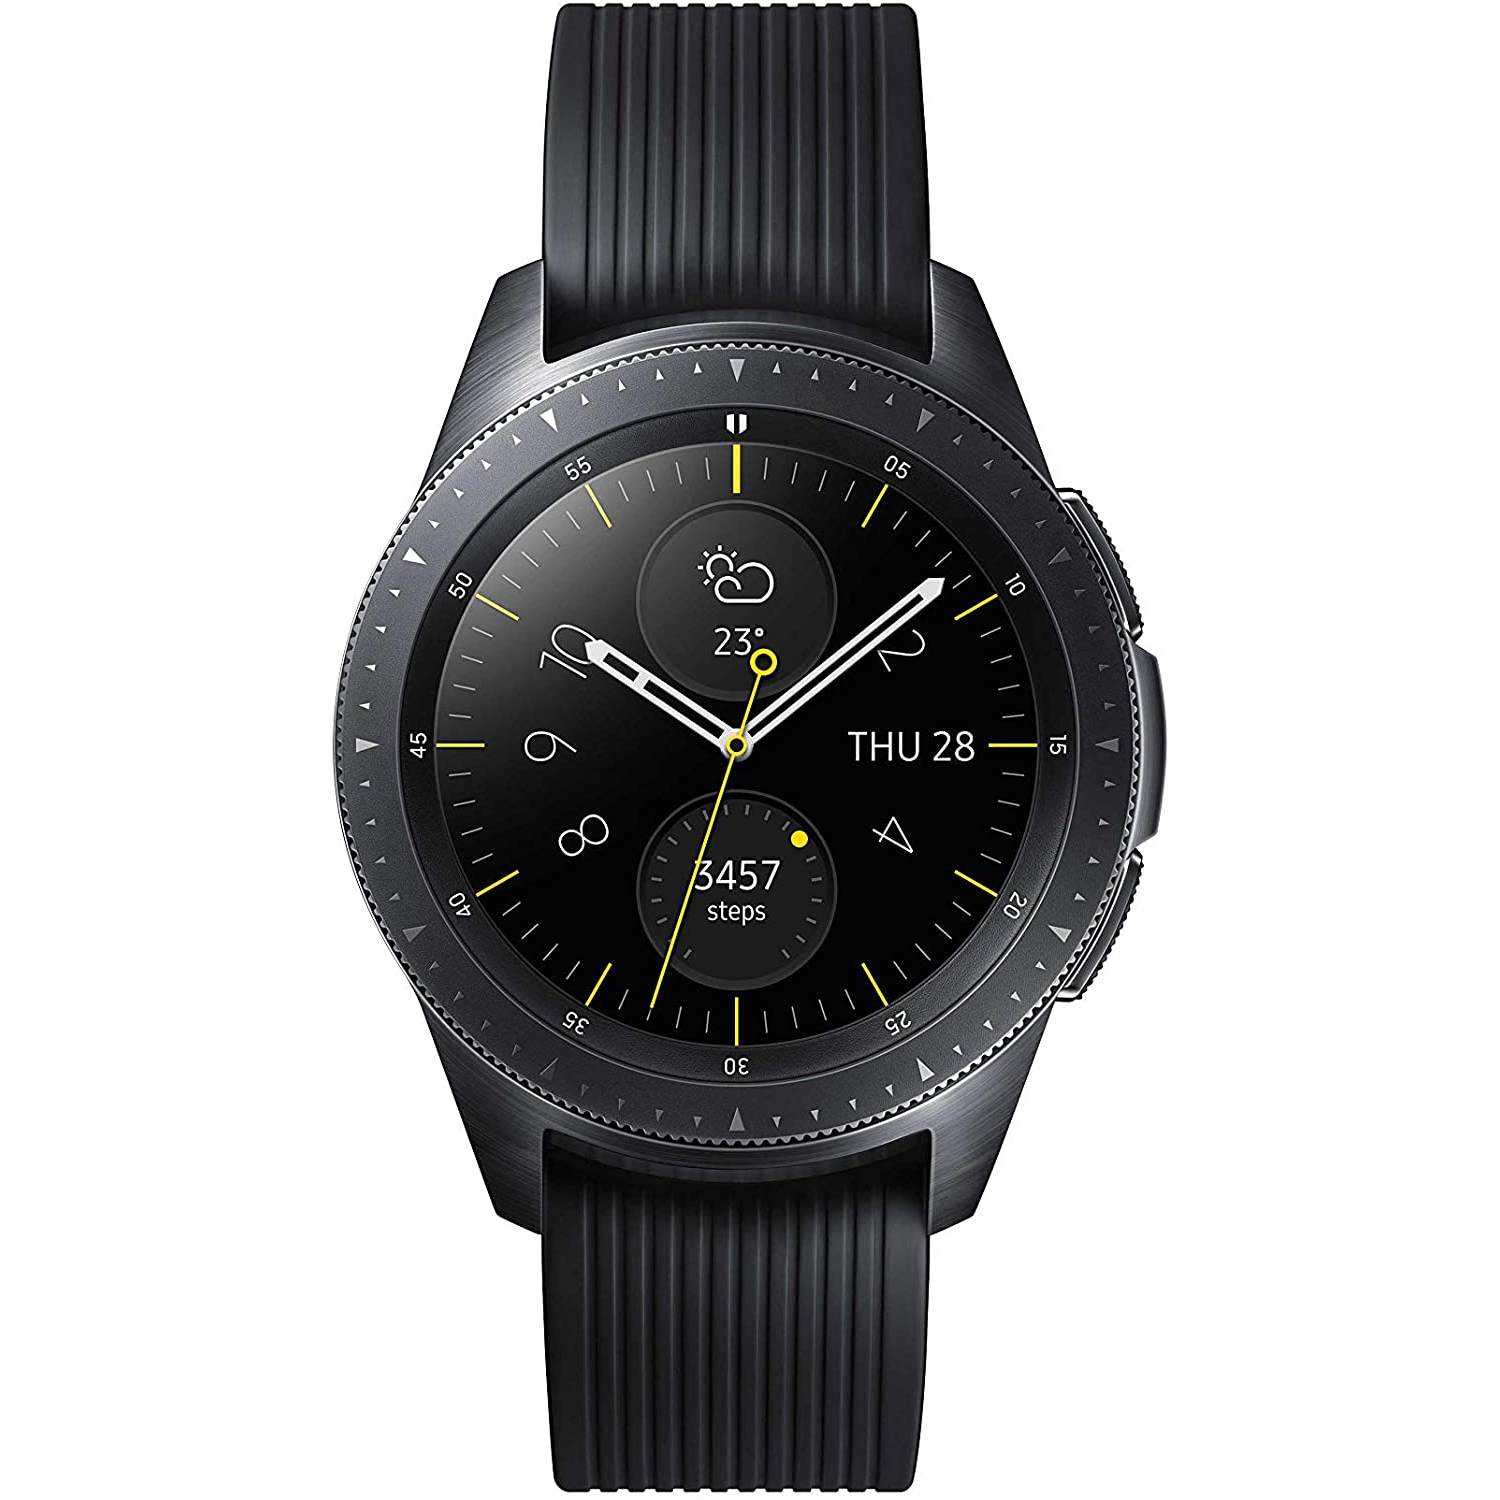 Samsung SM-R805W Galaxy Watch 46mm LTE Silver Open Box